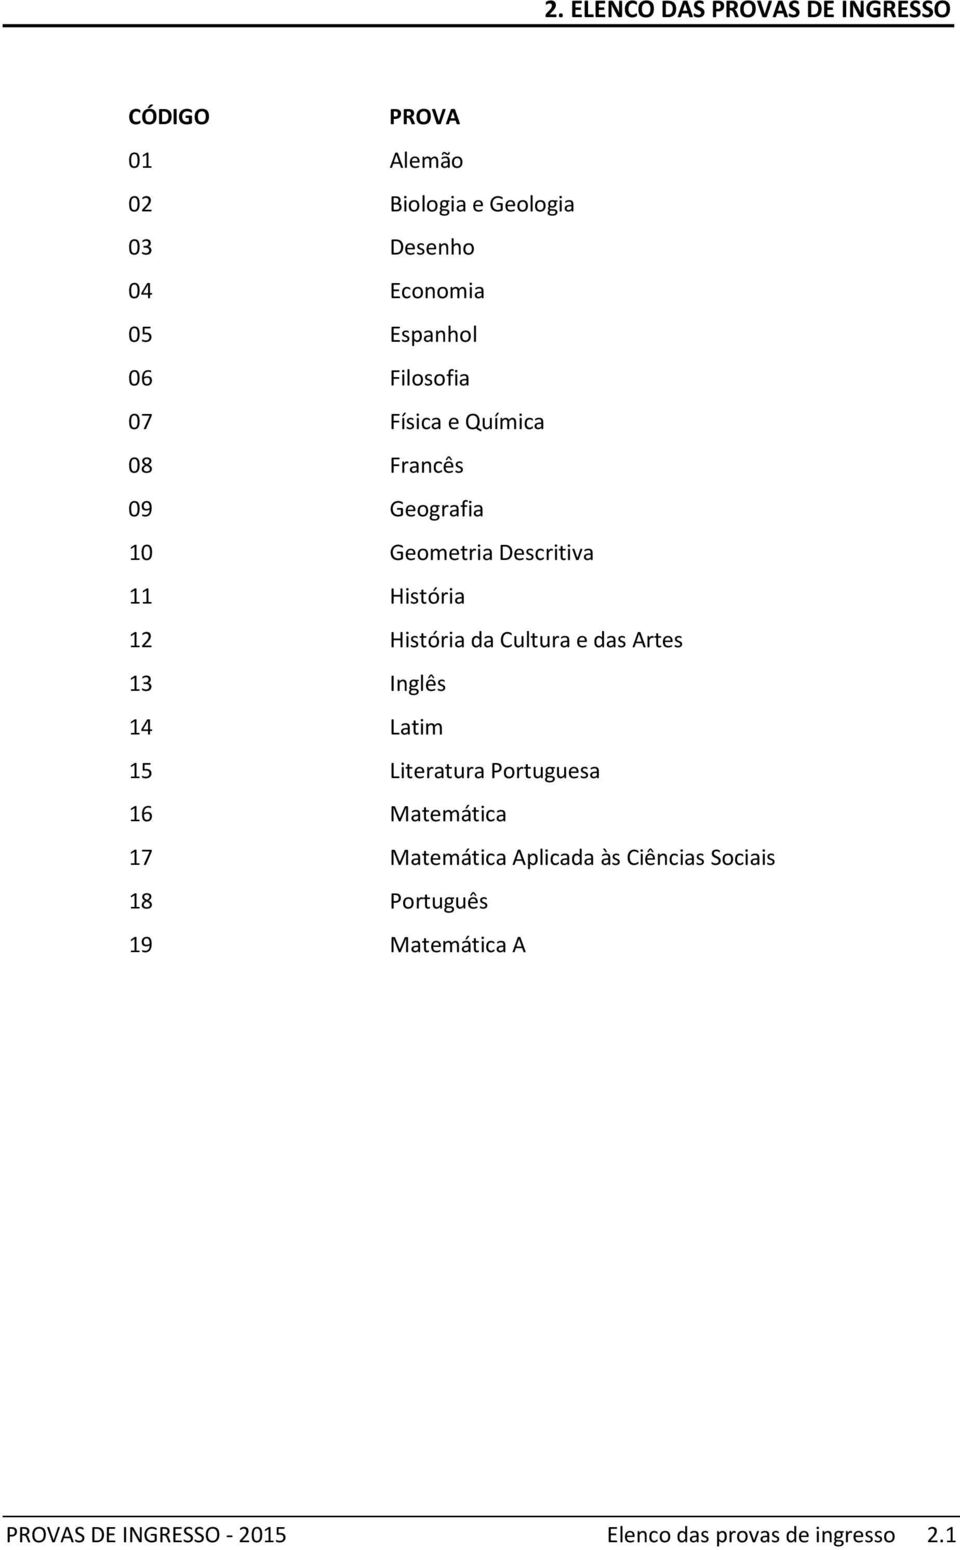 Artes 14 Latim 15 Literatura Portuguesa 17 Matemática